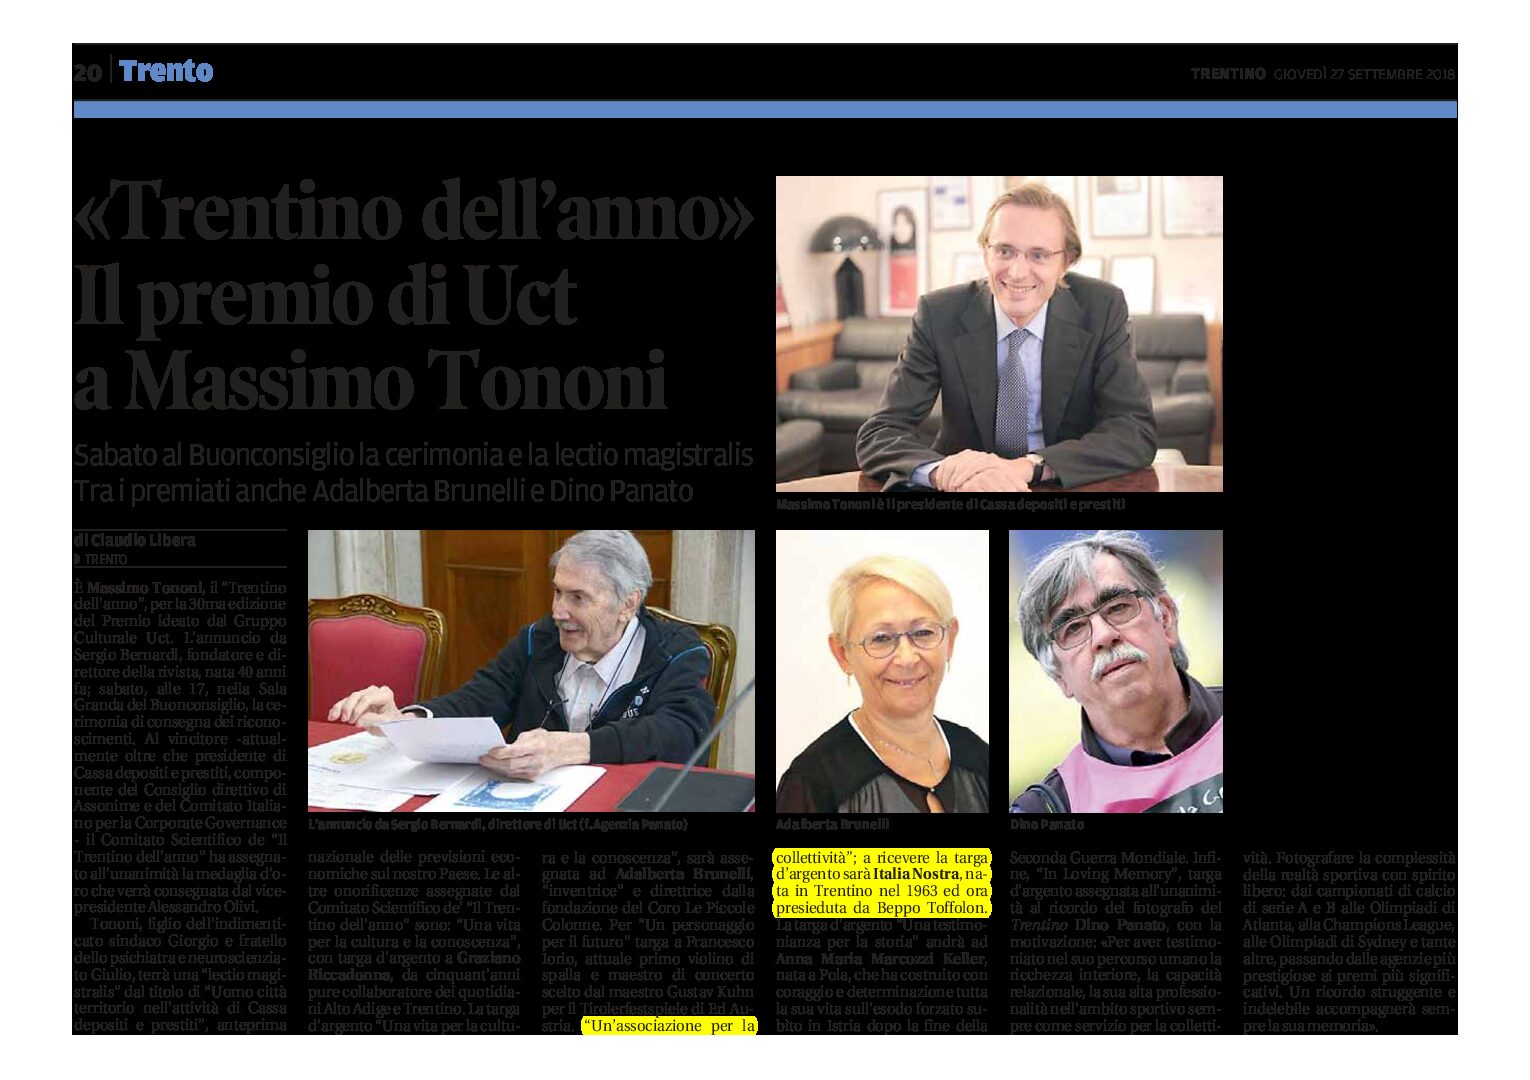 UCT, Trentino dell’anno: tra i premiati l’associazione Italia Nostra